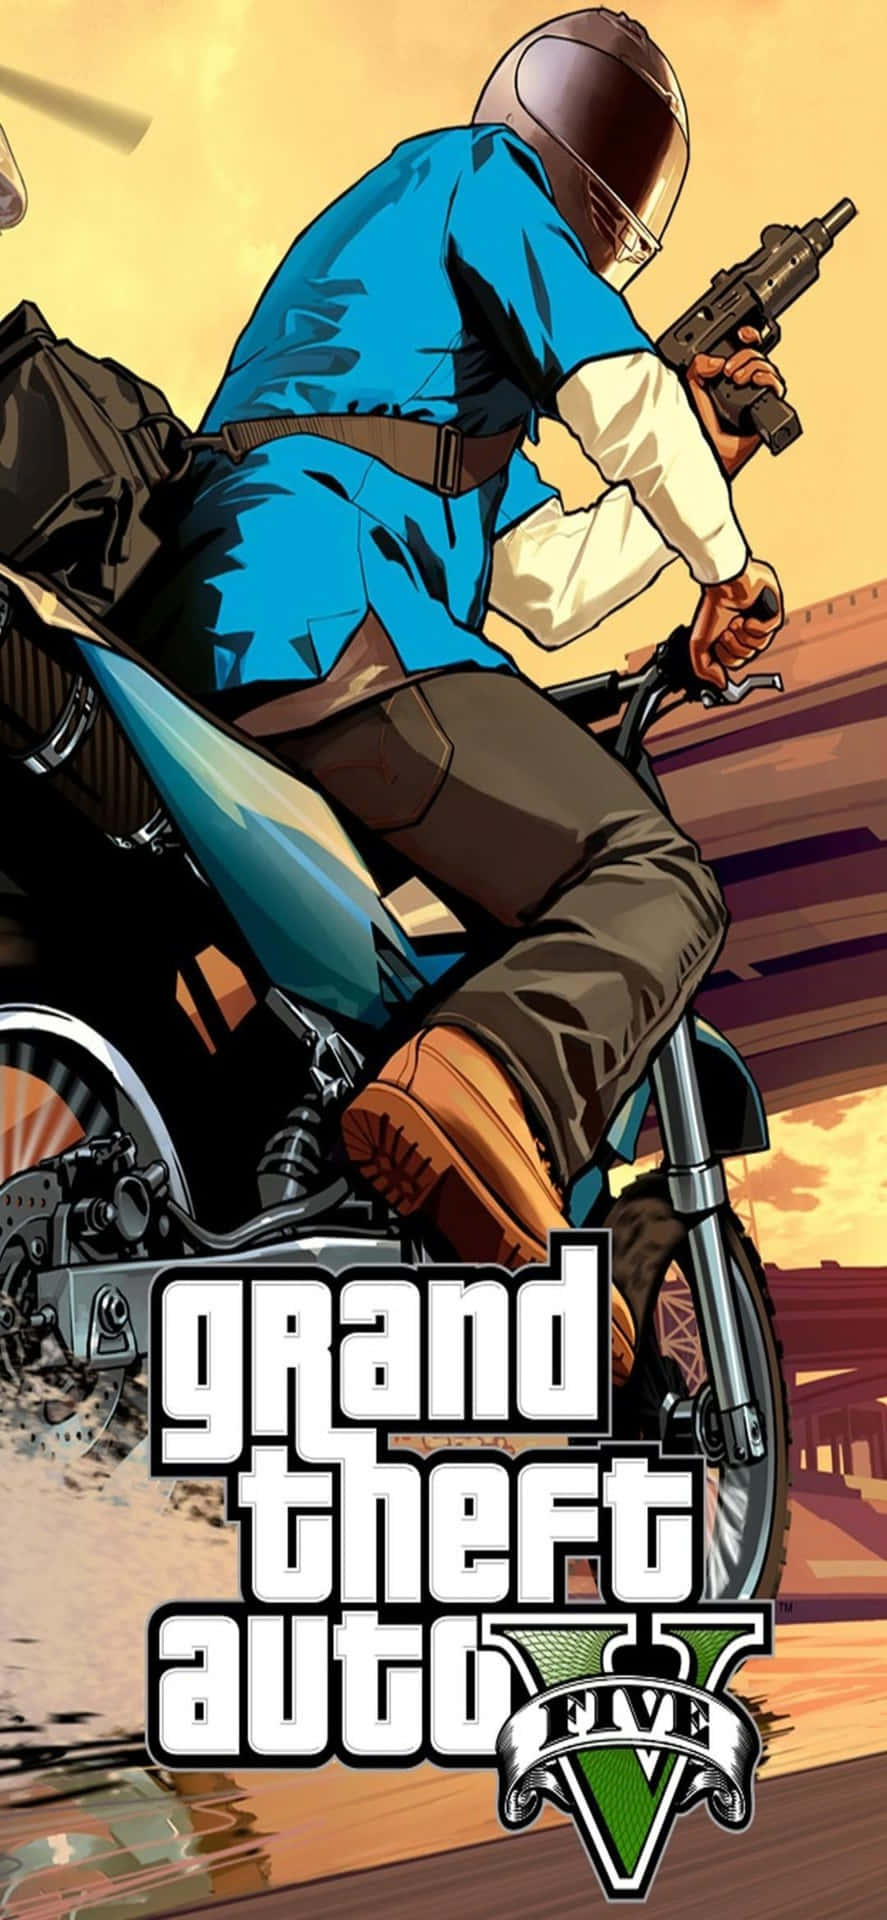 Iphonex Bakgrundsbild För Grand Theft Auto V & Motorcykel.